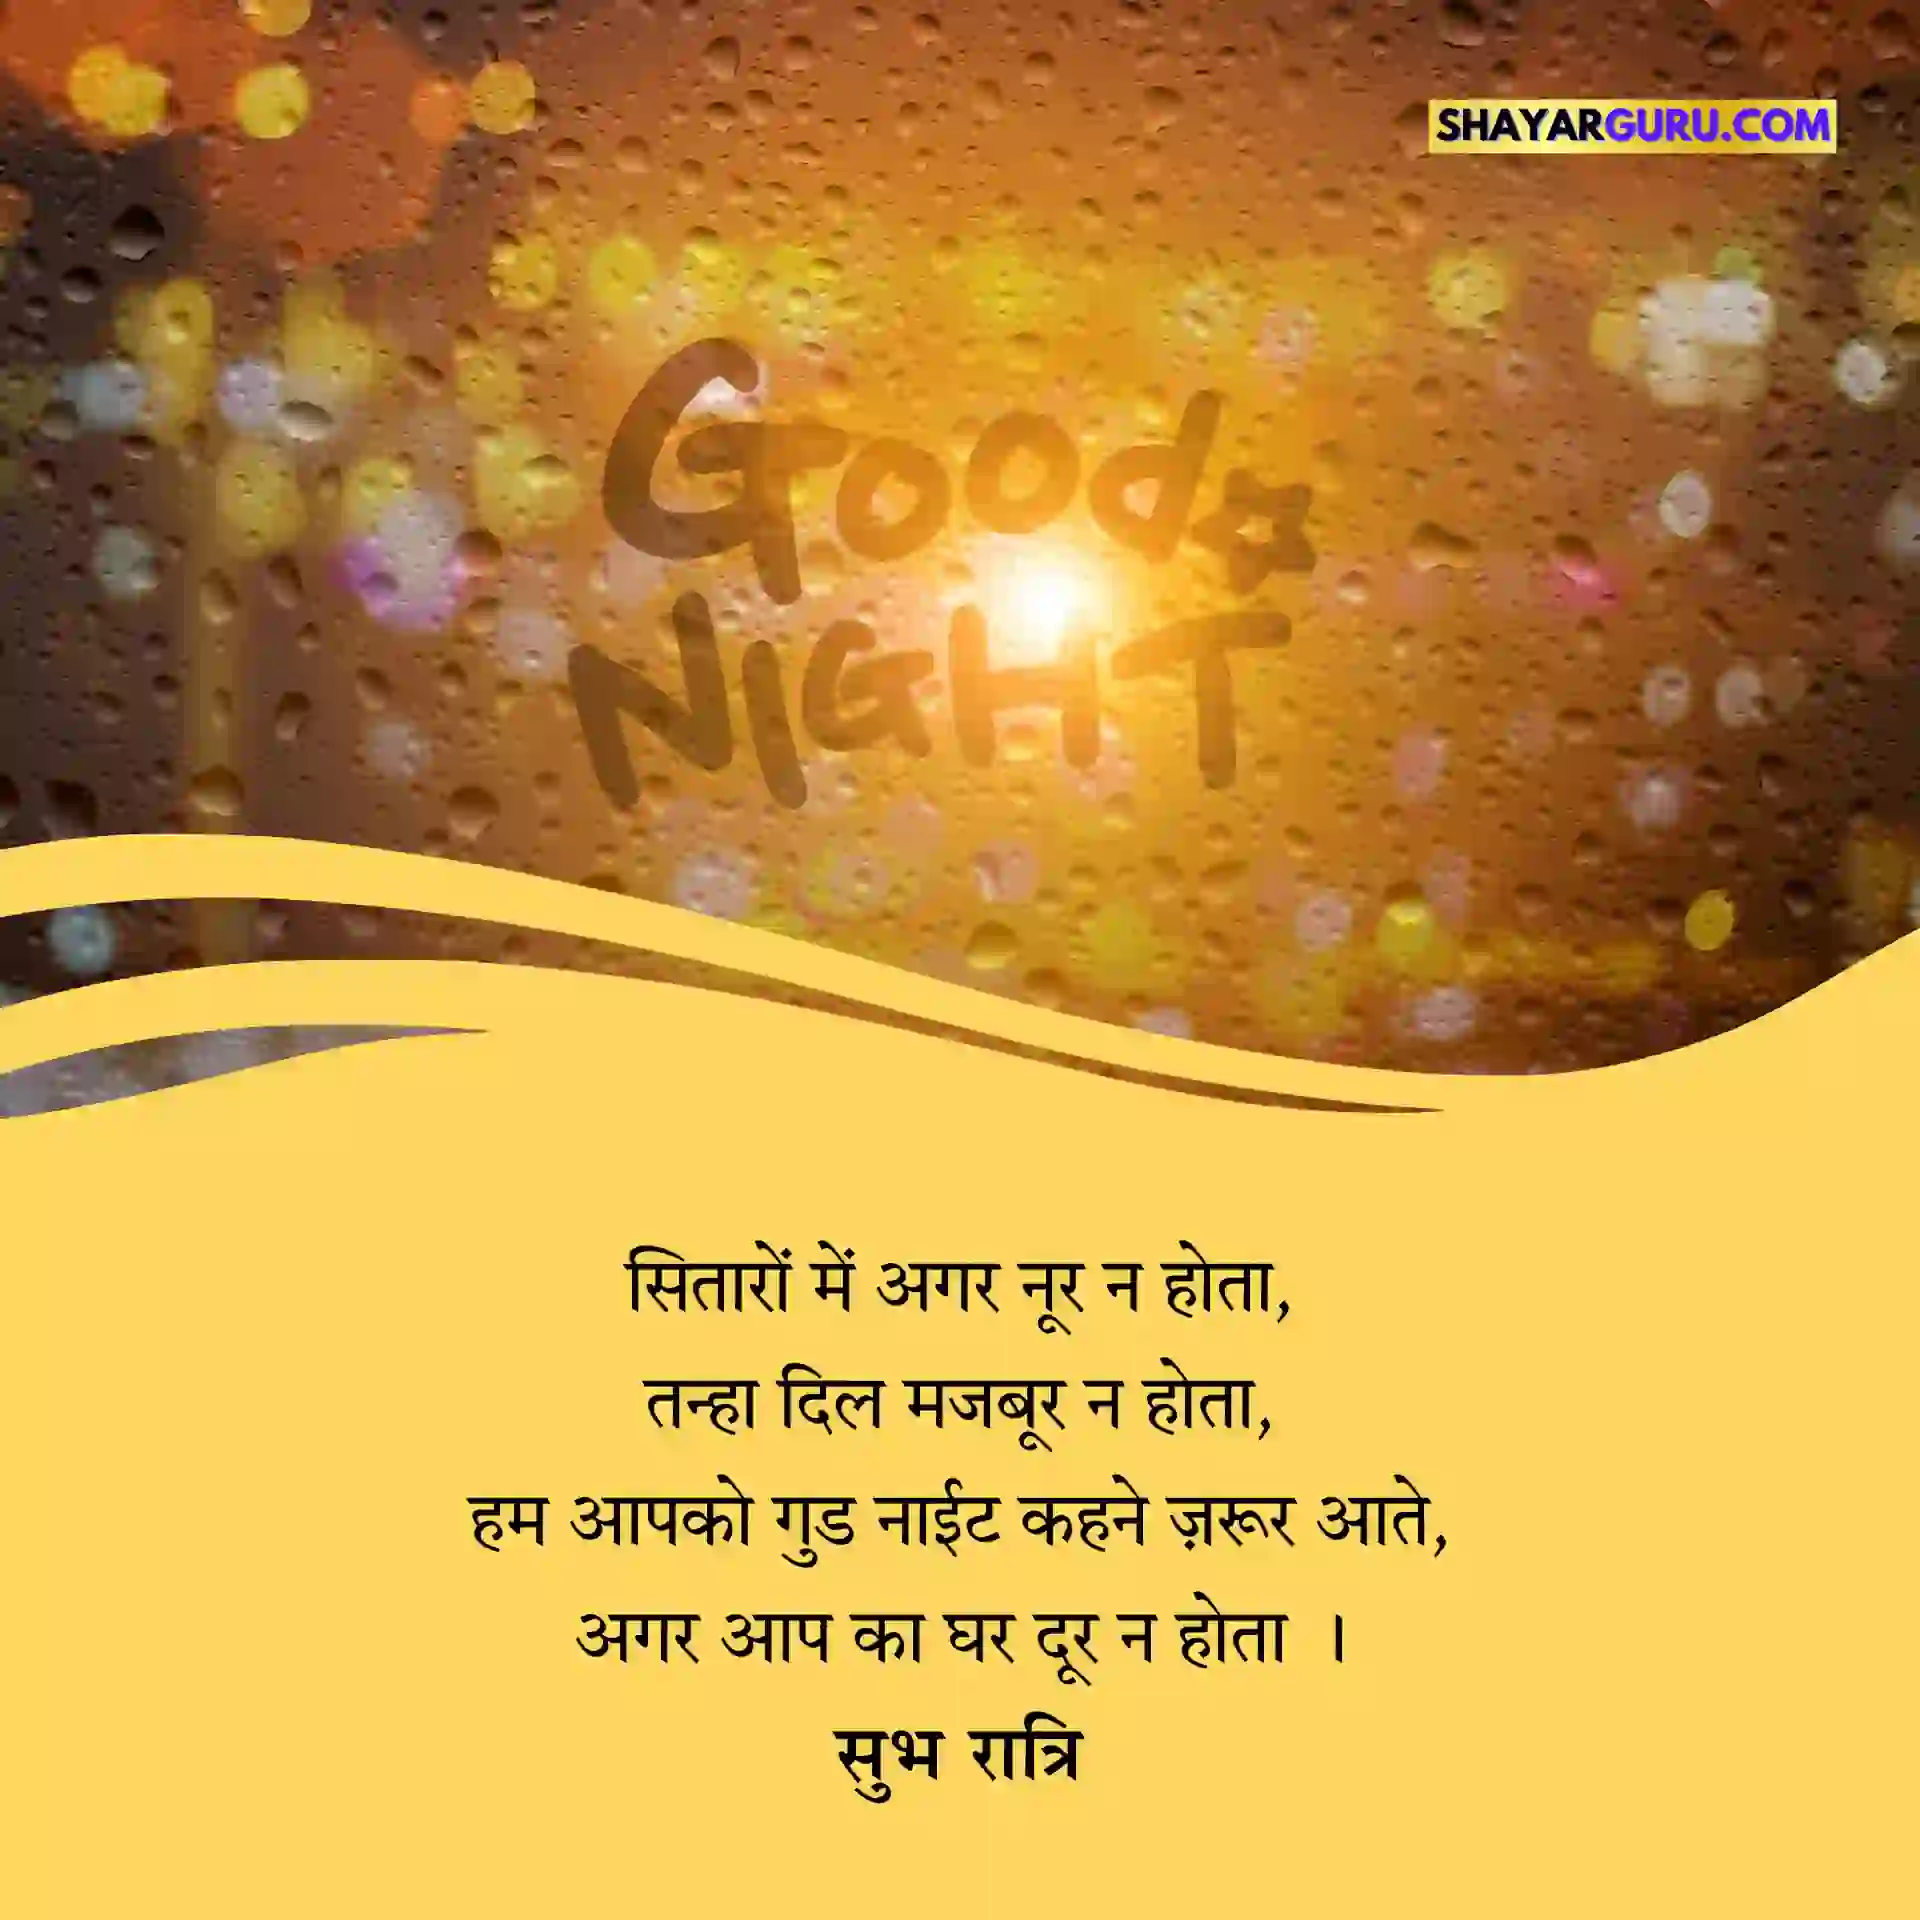 Good Night Shayari Image